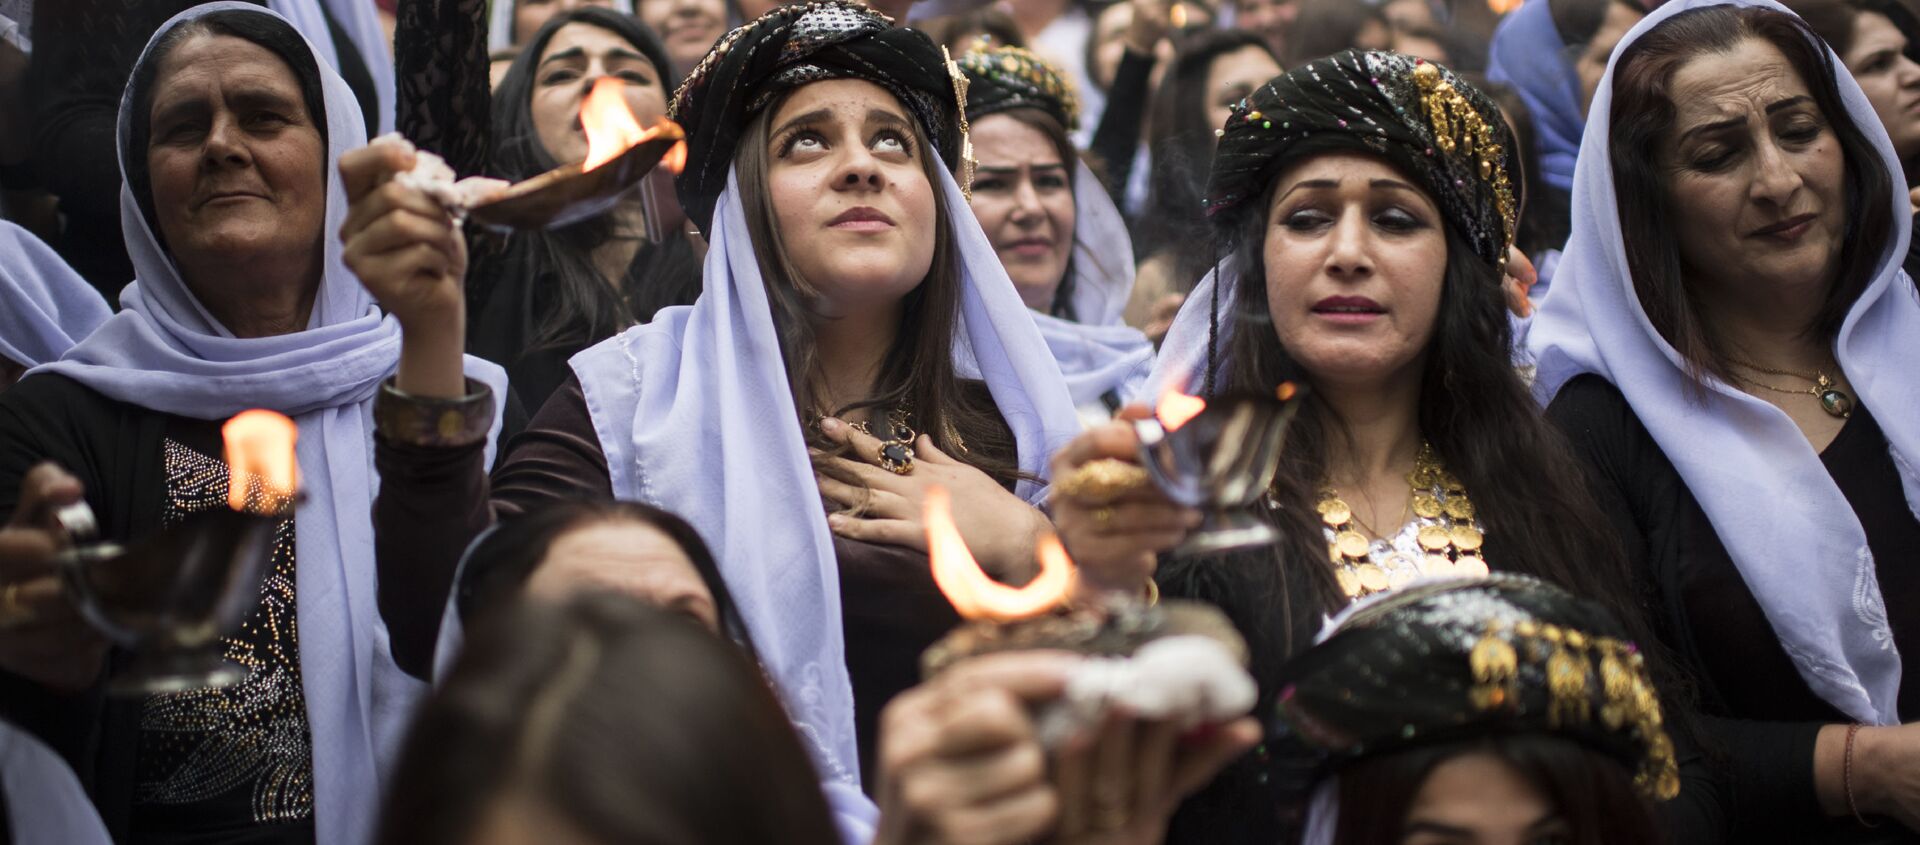 الإيزيديون في العراق يحتفلون بعيد رأس السنة الإيزيدية في معبد لالش بالقرب من دهوك (430 كلم شمال غرب بغداد)، العراق 18 أبريل/ نيسان 2017 - سبوتنيك عربي, 1920, 31.10.2020